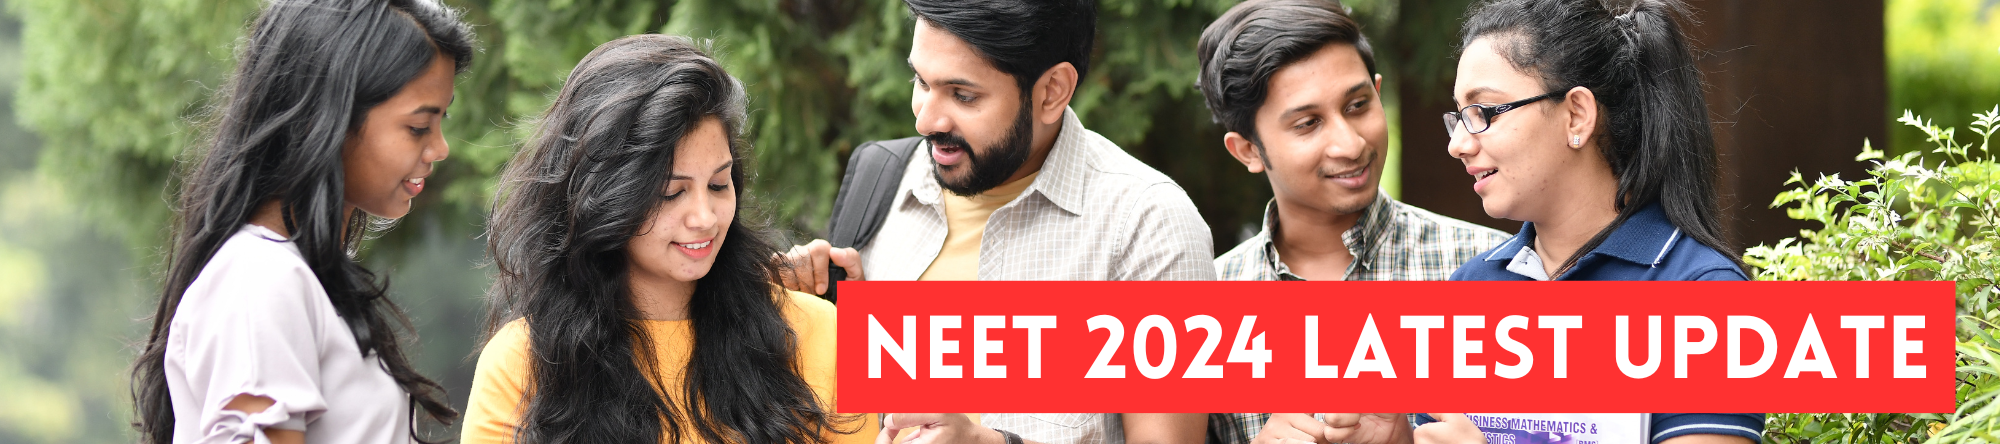 NEET 2024 News & updates